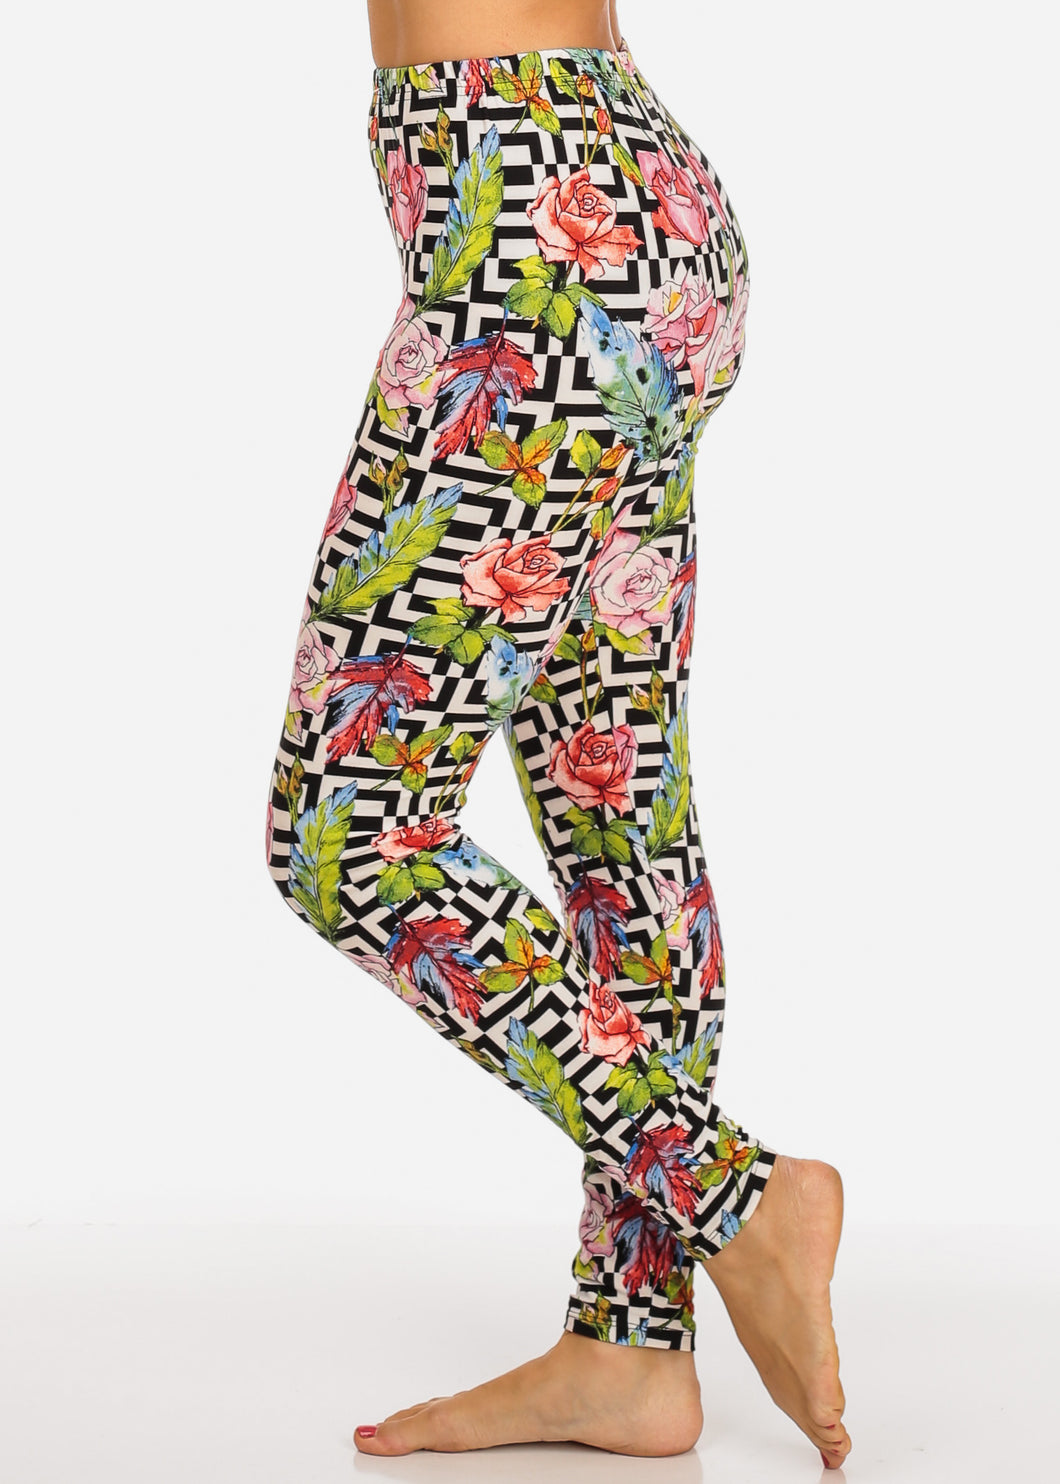 Blossom Pattern Multi Color Women's Leggings Skinny Leg Pants F